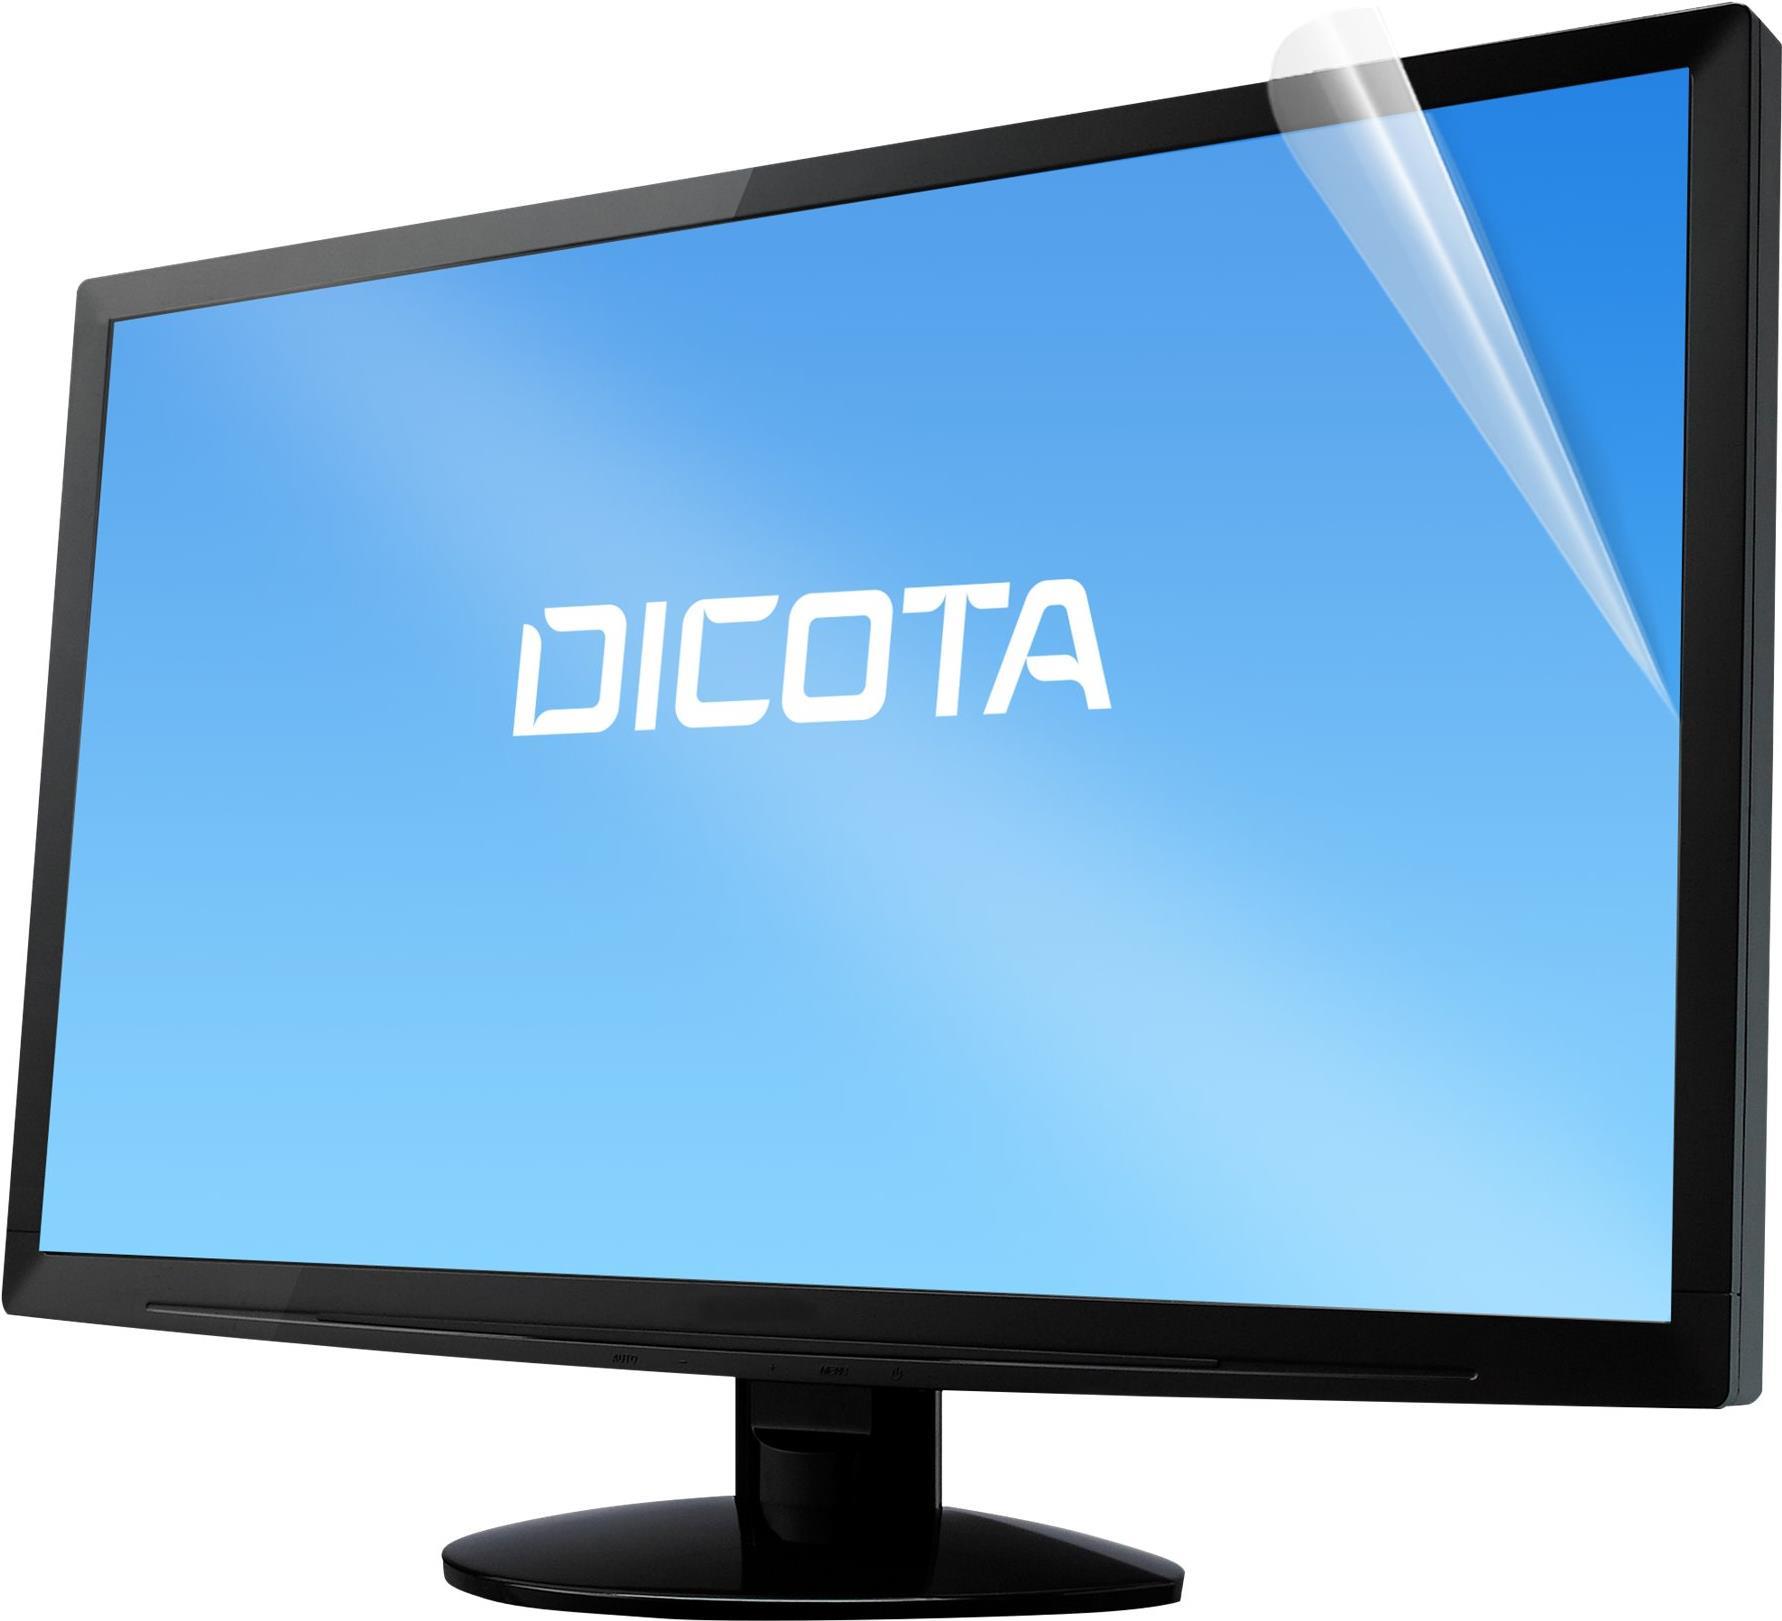 DICOTA - Display-Blendschutzfilter - entfernbar - klebend - 68,6 cm Breitbild (27 Breitbild) - durchsichtig - für Kyocera ECOSYS P4140dn, P4140dn/KL3